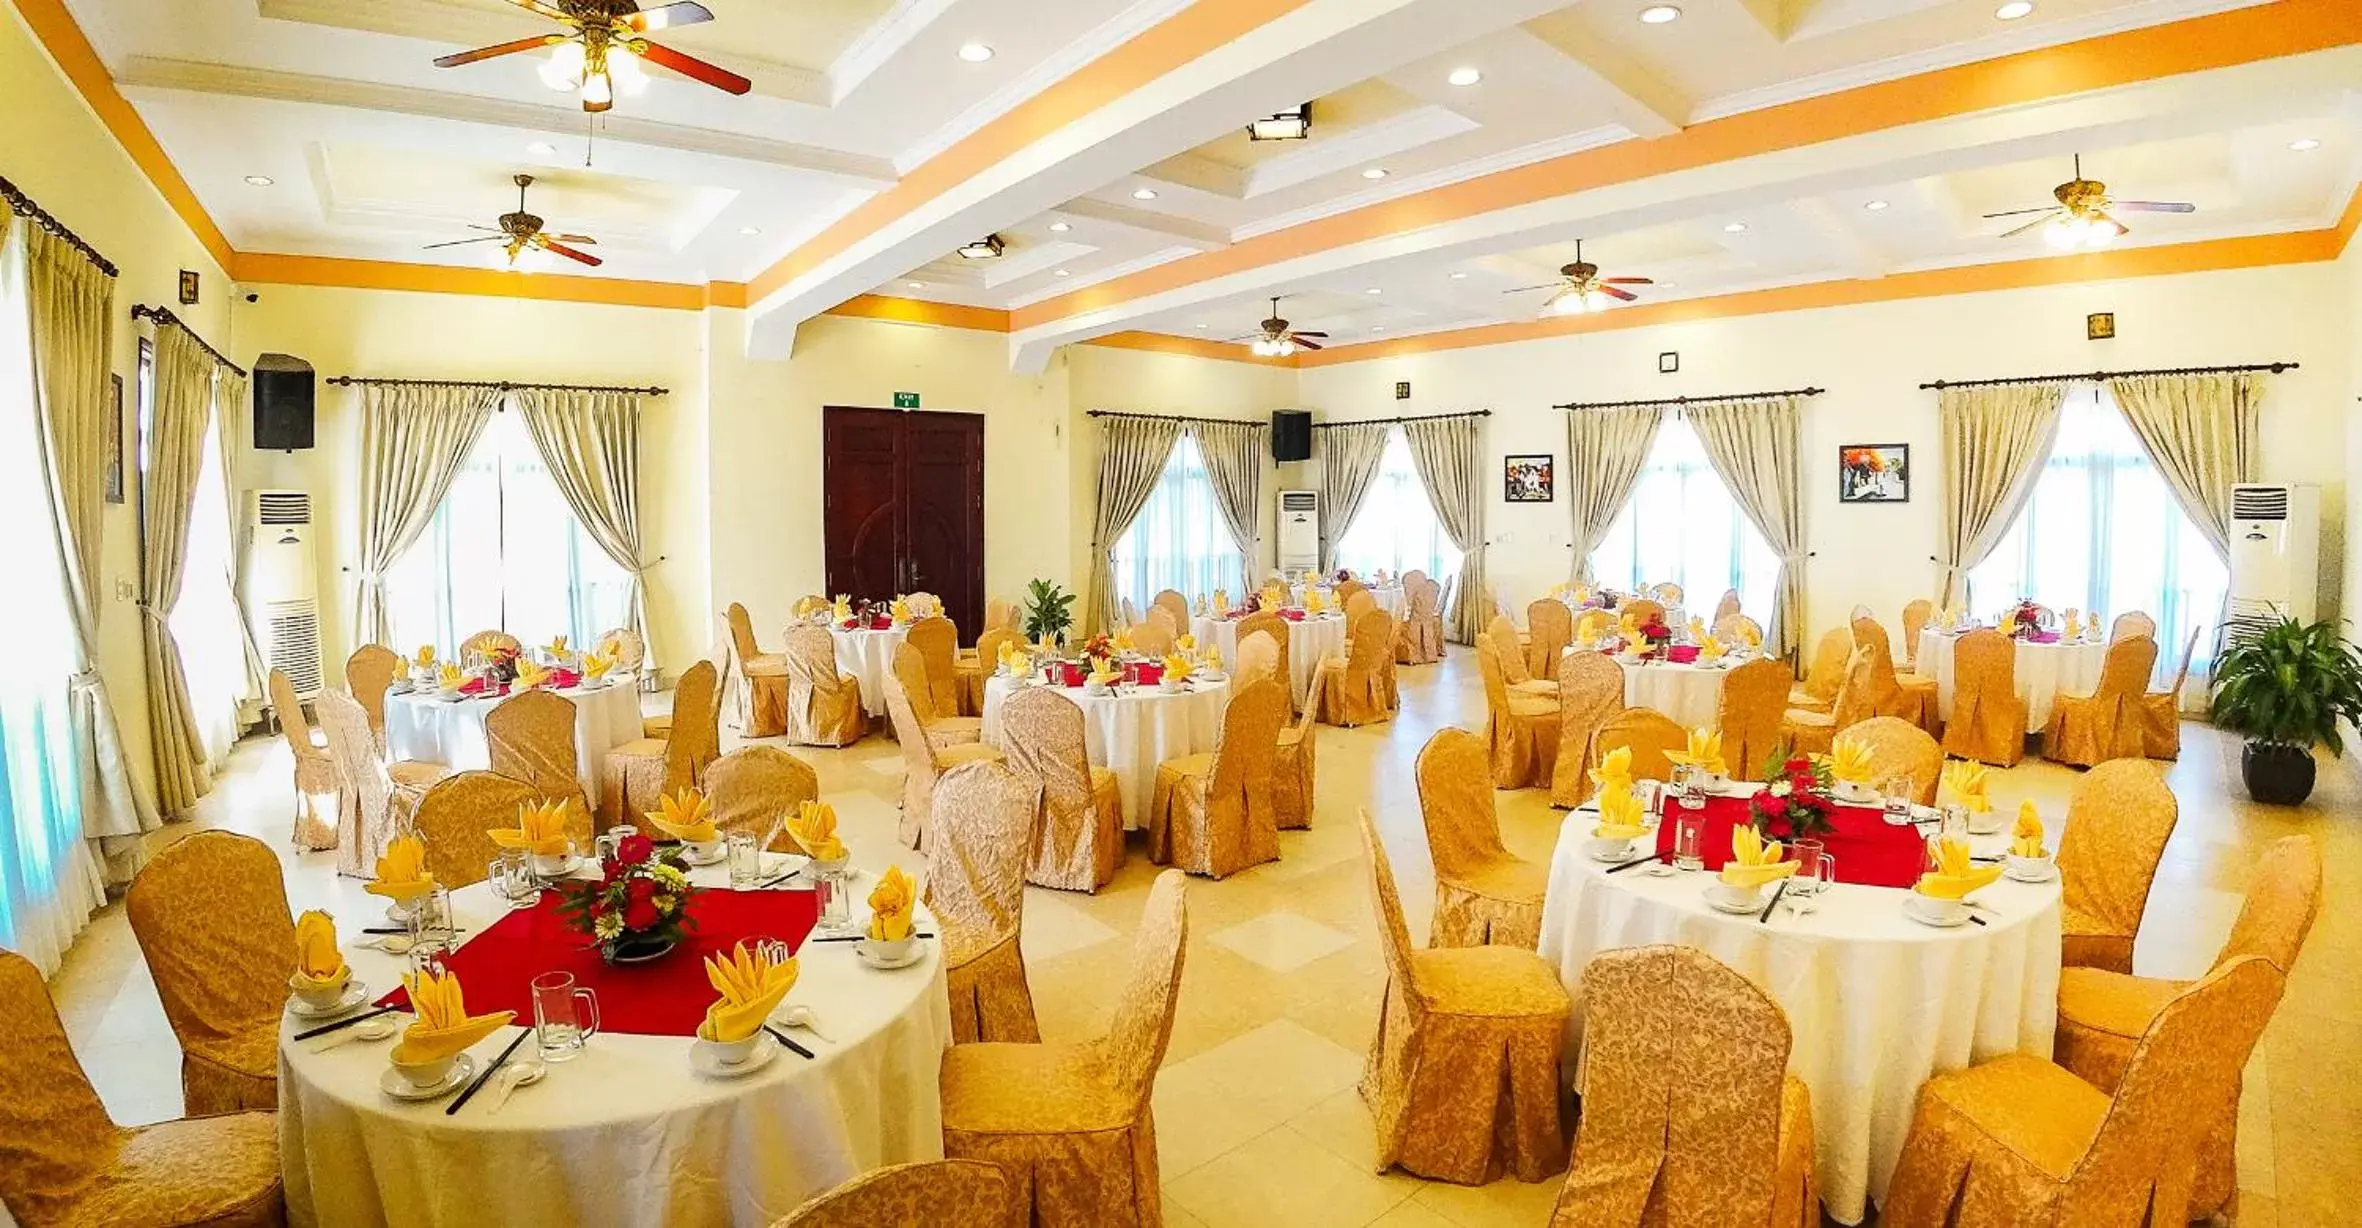 Banquet/Function facilities, Banquet Facilities in Golden Coast Resort & Spa